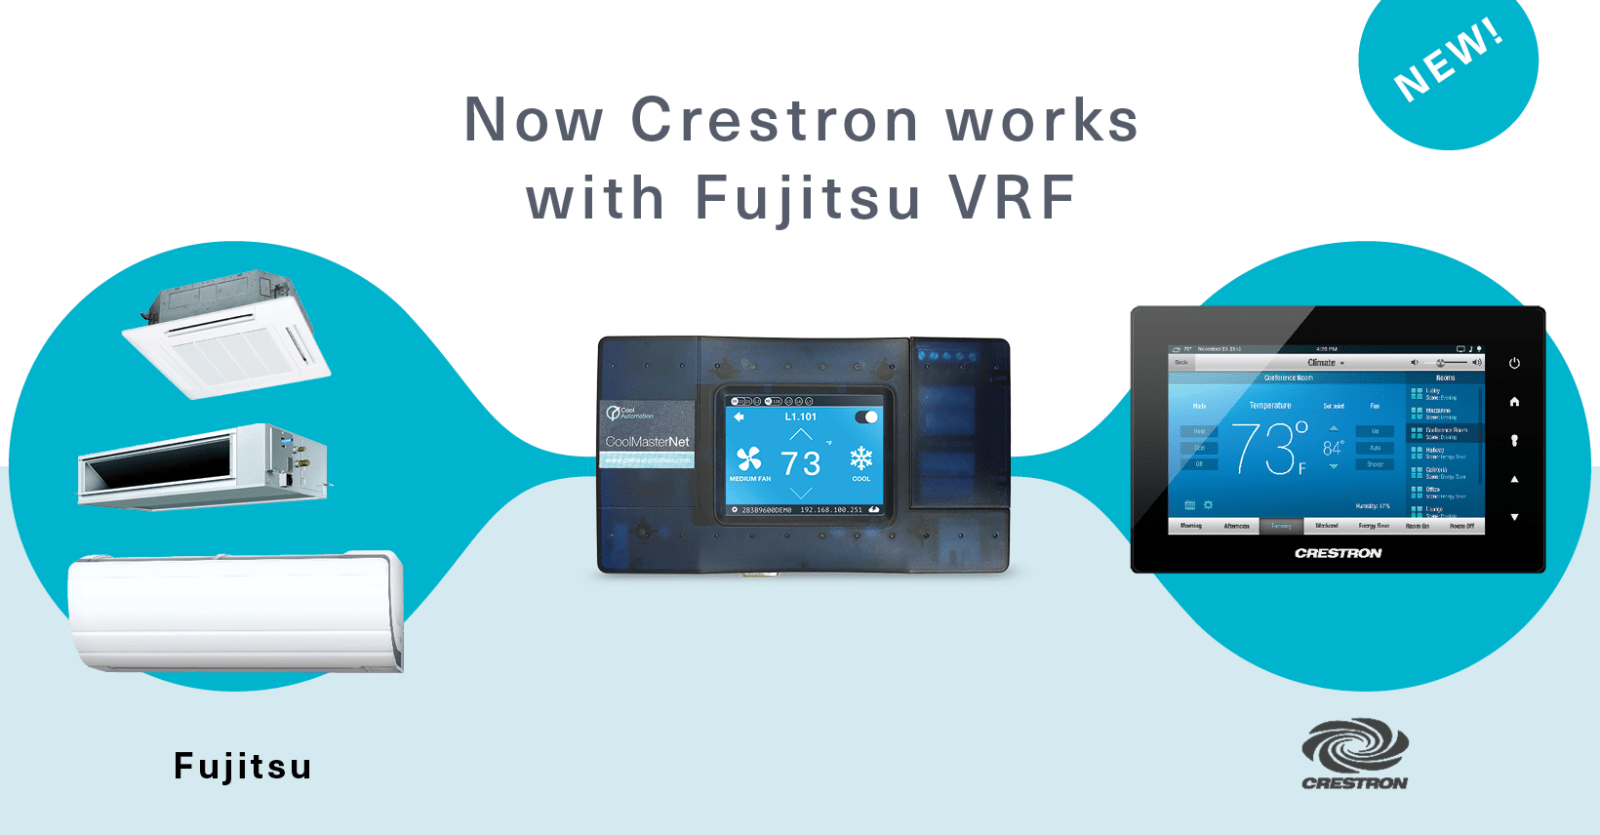 Crestron Works with Fujitsu VRF HVAC